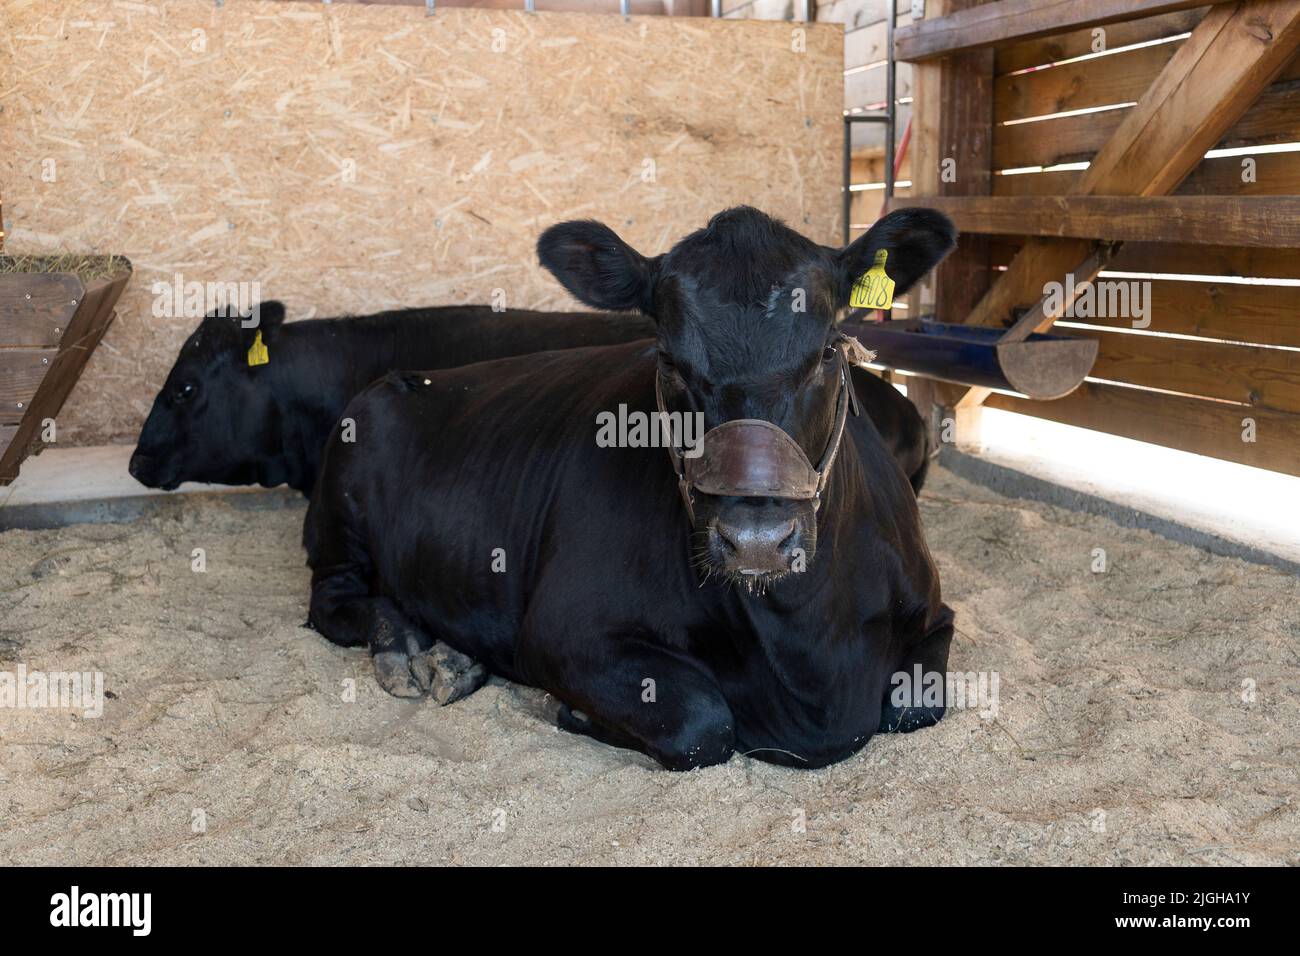 El toro negro está en el granero. El concepto de cría de ganado. El toro en la granja. Foto de stock